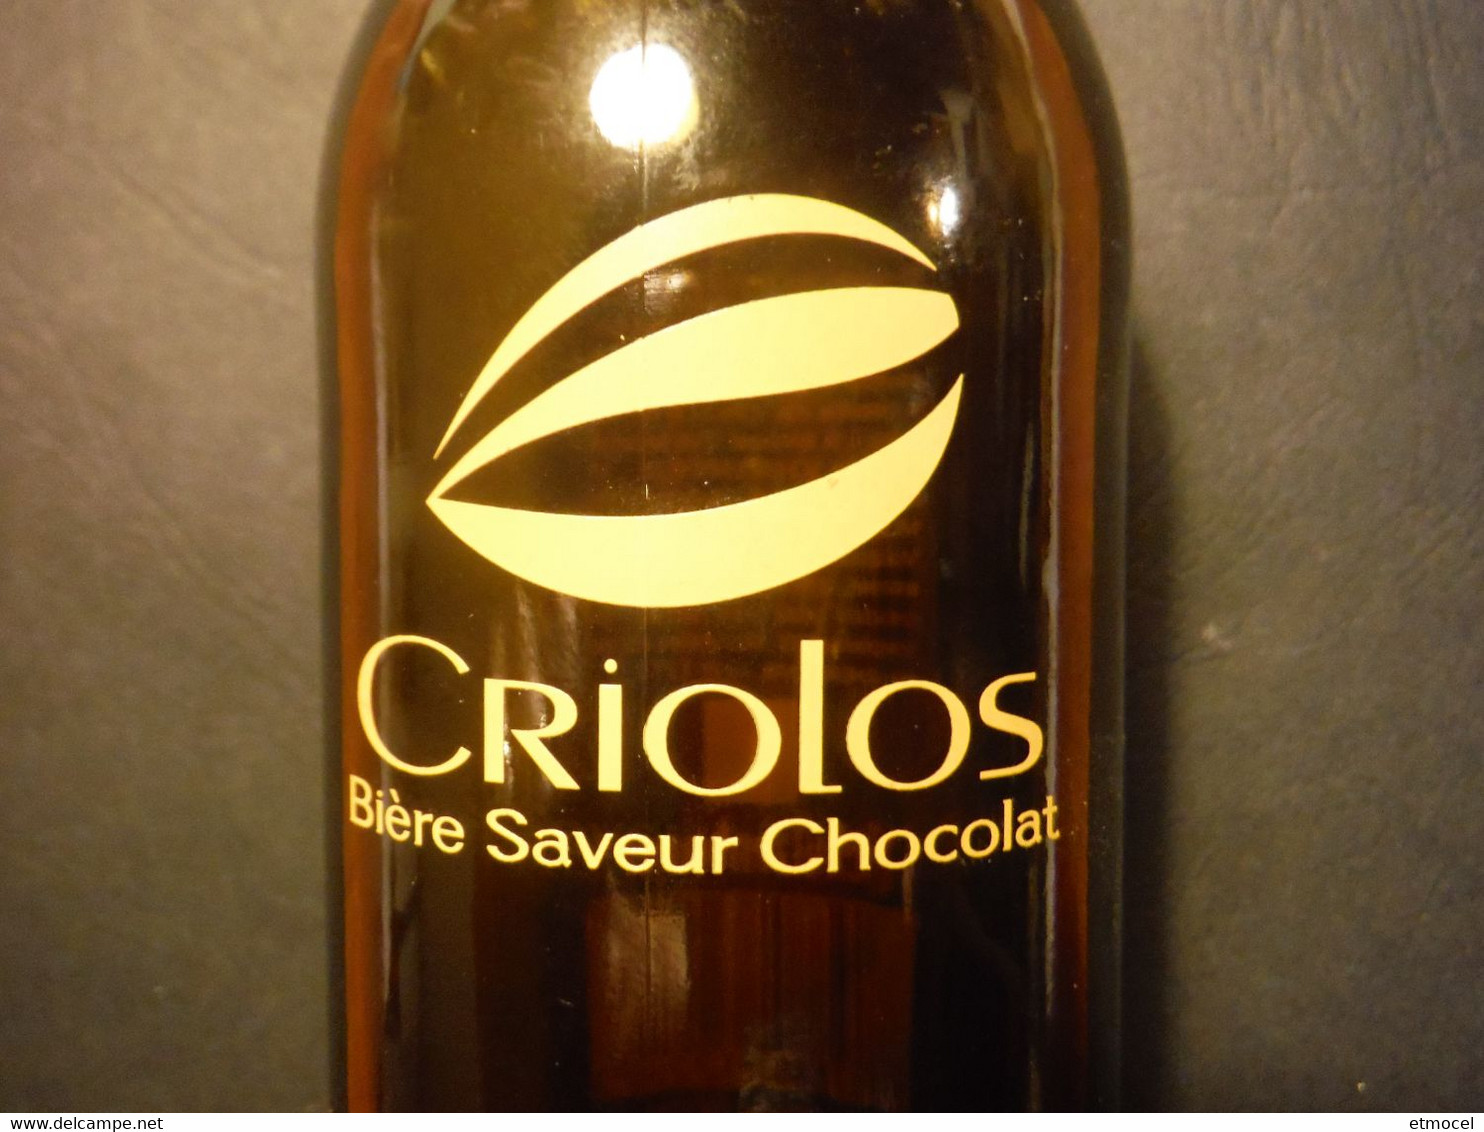 Bouteille Rare De Bière Criolos - Bière Saveur Chocolat - SCHUTZENBERGER - Thierry Mulhaupt - Birra